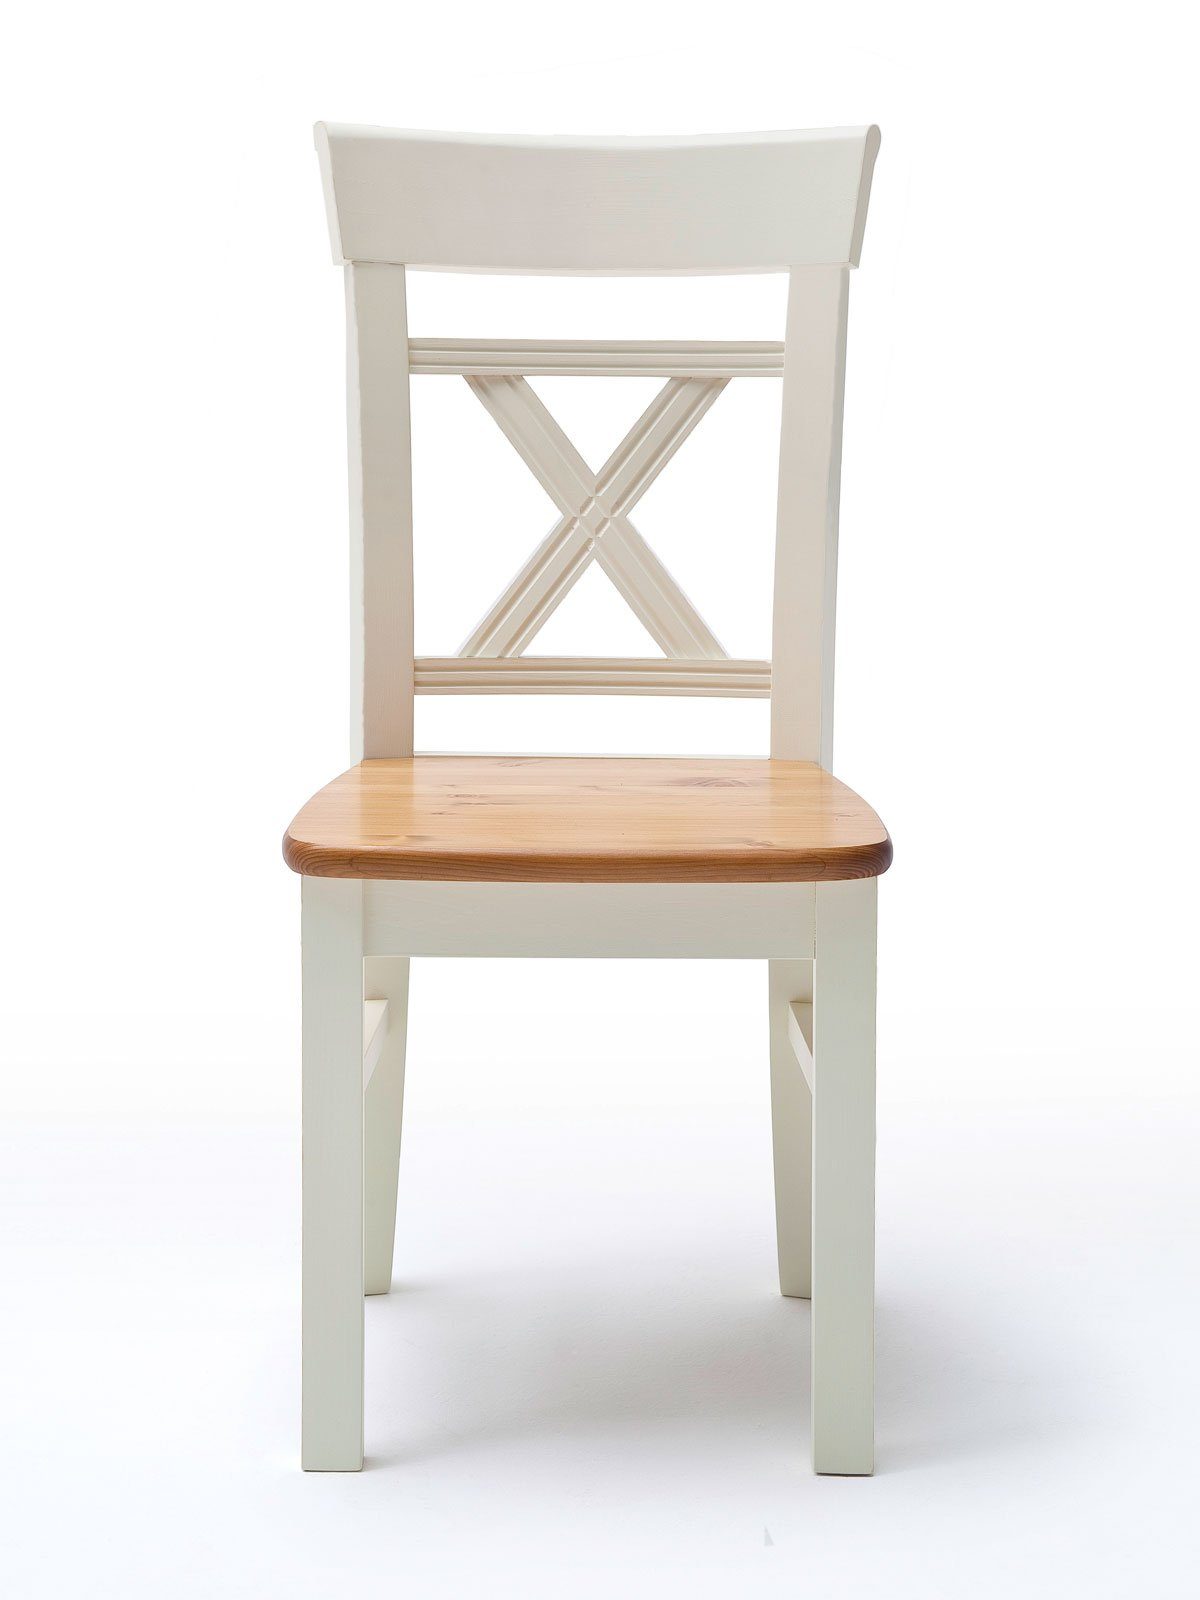 Sitzfläche Massivholz Padua sierra Esszimmerstuhl Stuhl panna Casamia Sitzkissen mit/ohne Absetzung Esszimmer mit